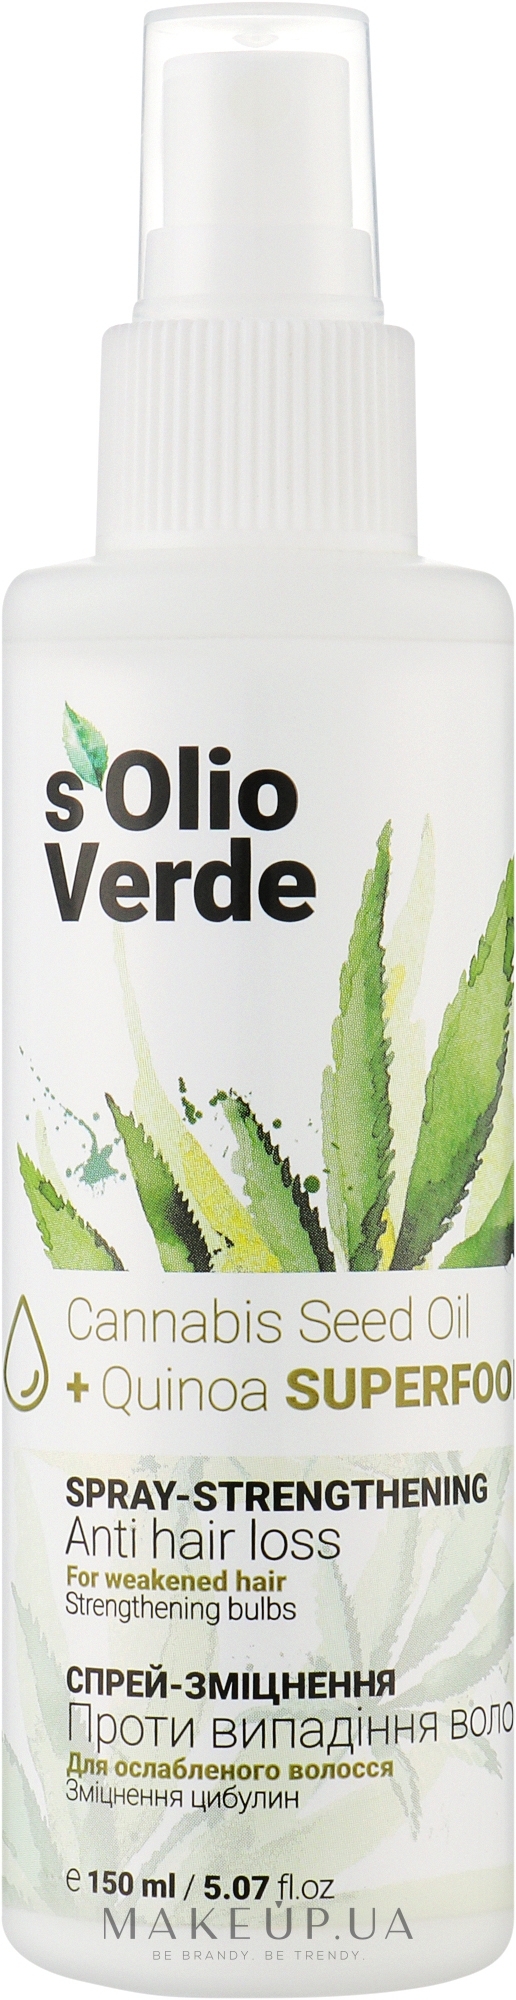 Спрей-зміцнення проти випадання волосся - Solio Verde Cannabis Speed Oil Spray-Strengthening — фото 150ml